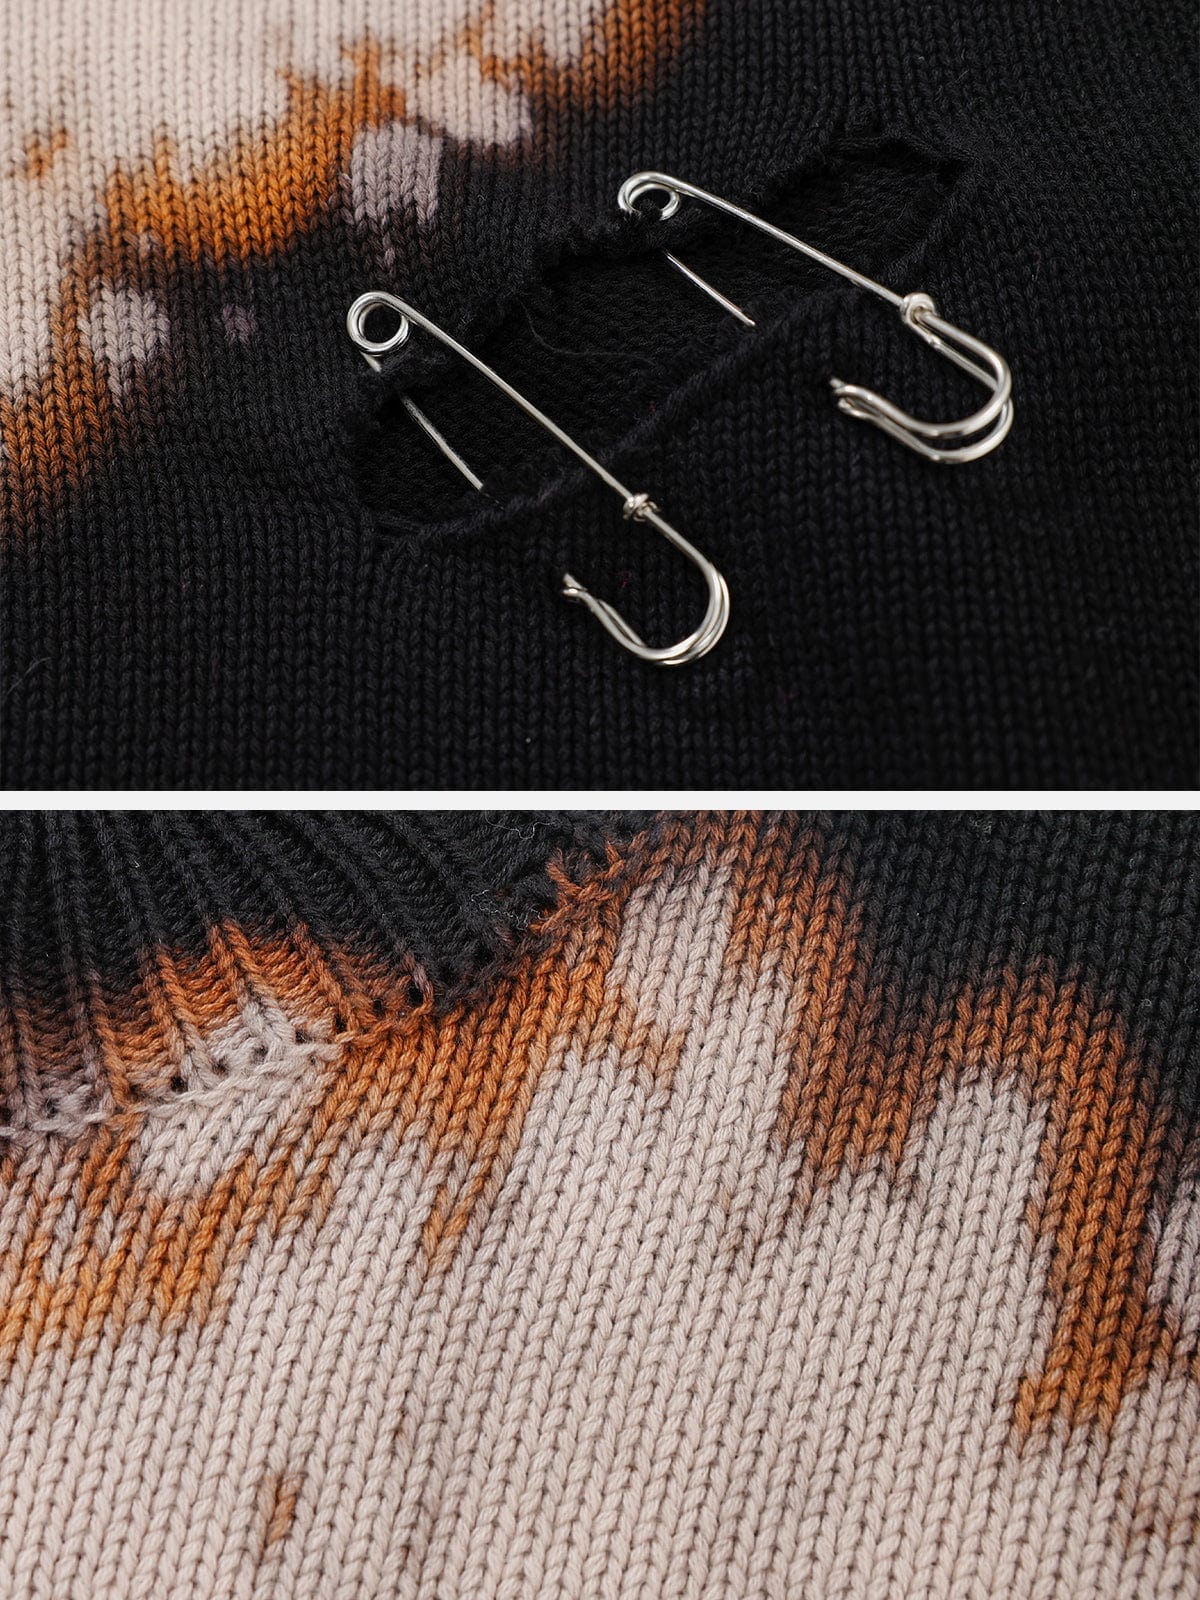 Paperclip Tie Dye Hole Knit Sweater Streetwear Brand Techwear Combat Tactical YUGEN THEORY